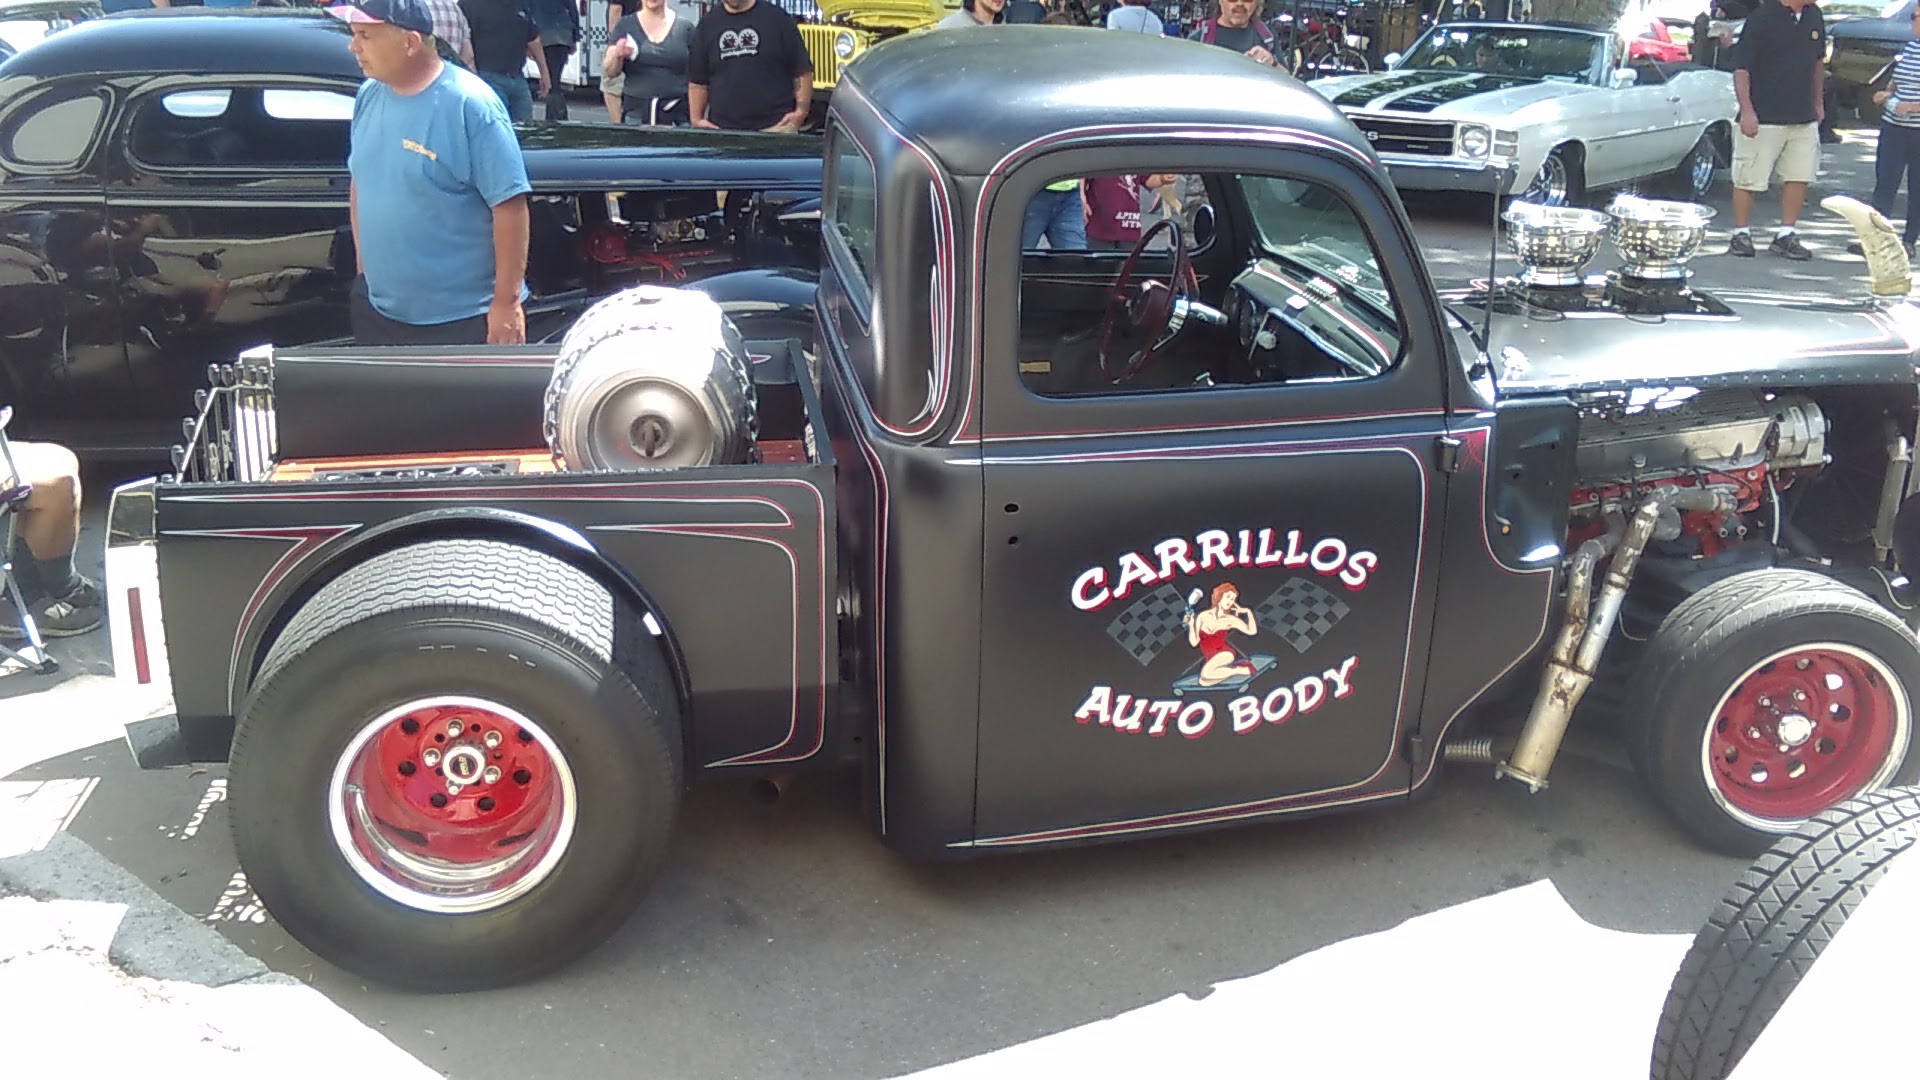 Carrillo's Auto Body